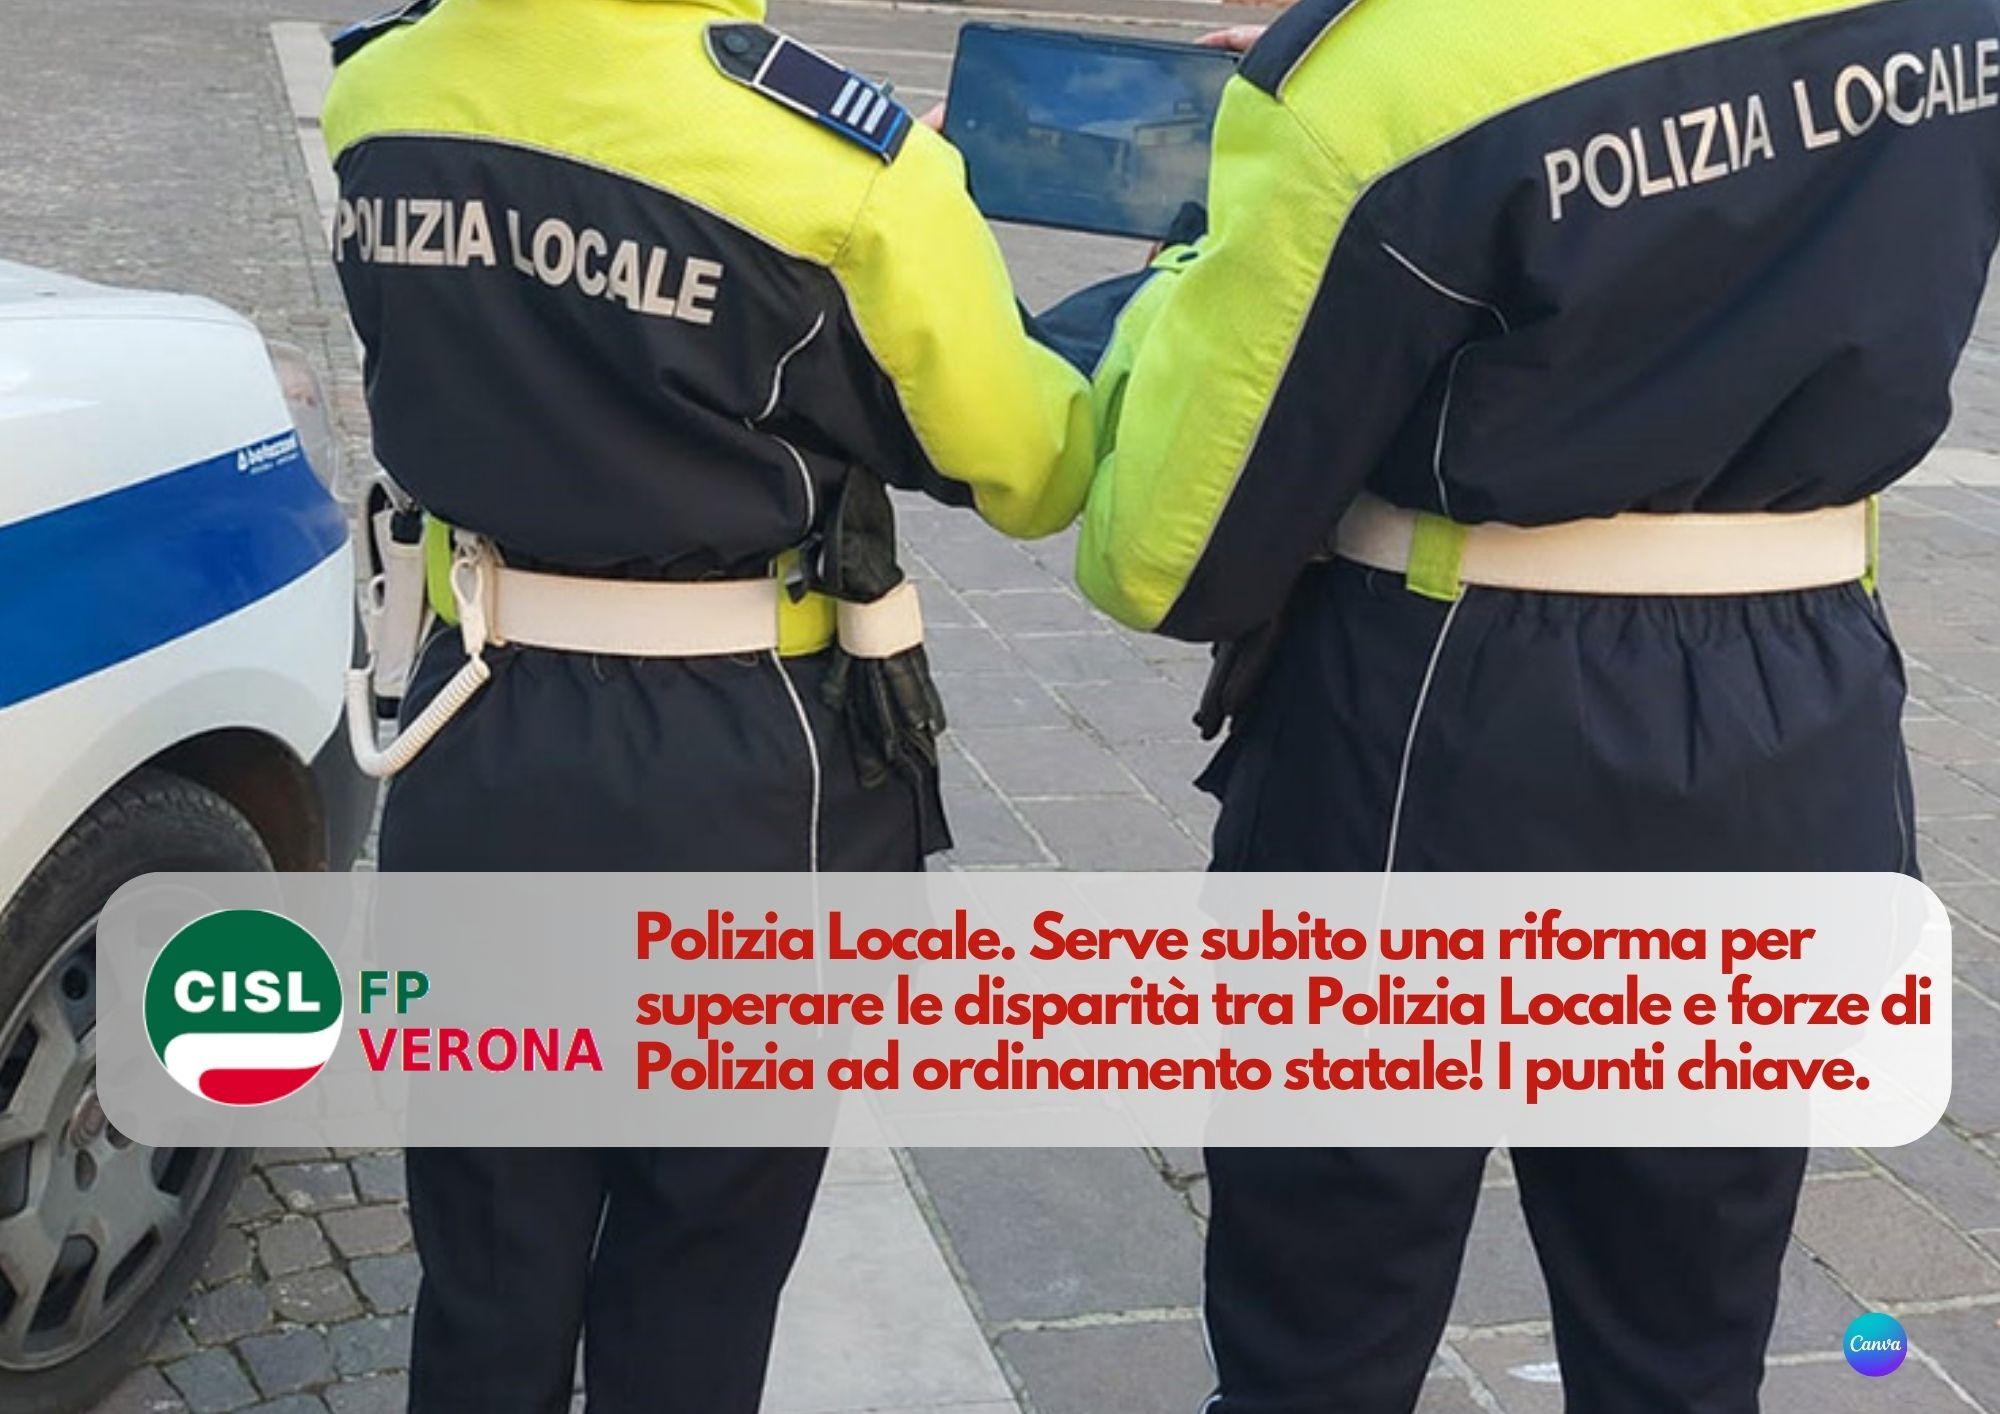 CISL FP Verona. Polizia Locale: serve una riforma per superare le disparità. Da fare ora!